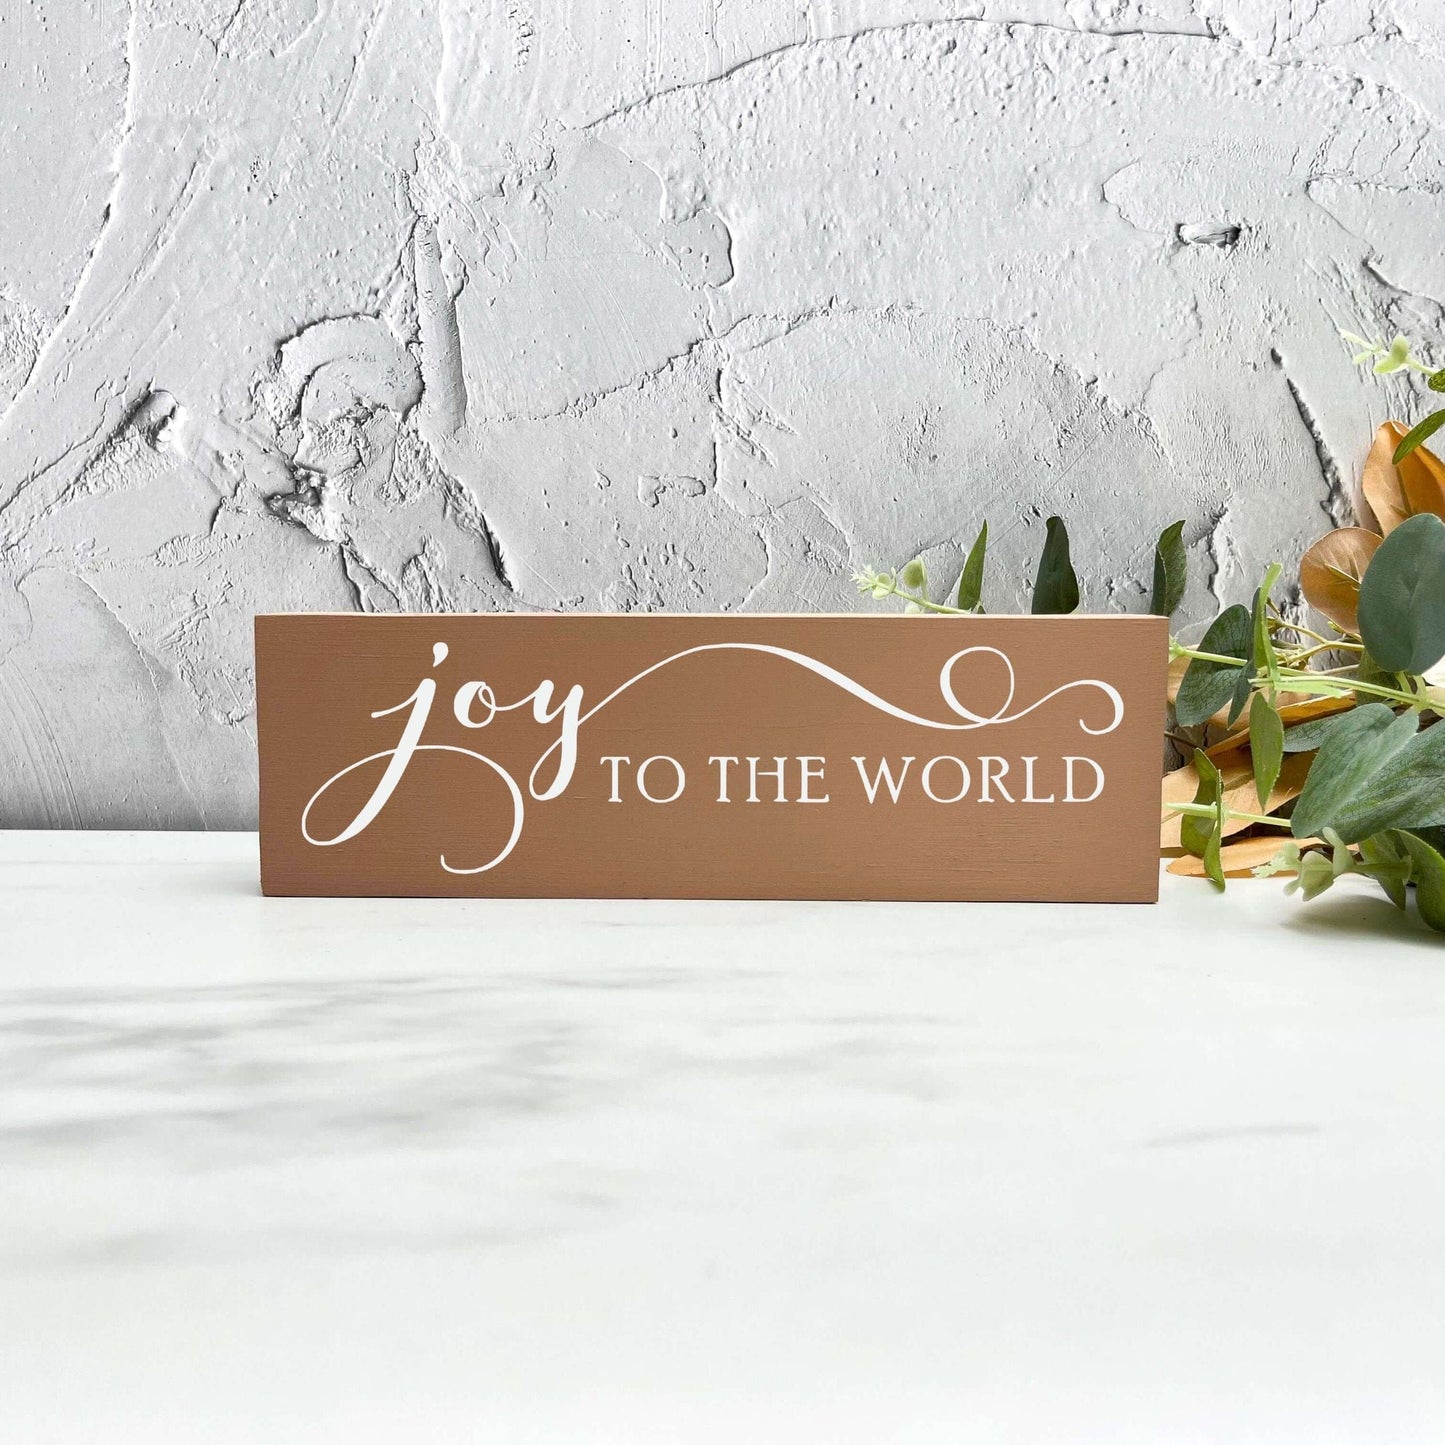 Joy to the world sign, christmas wood signs, christmas decor, home decor